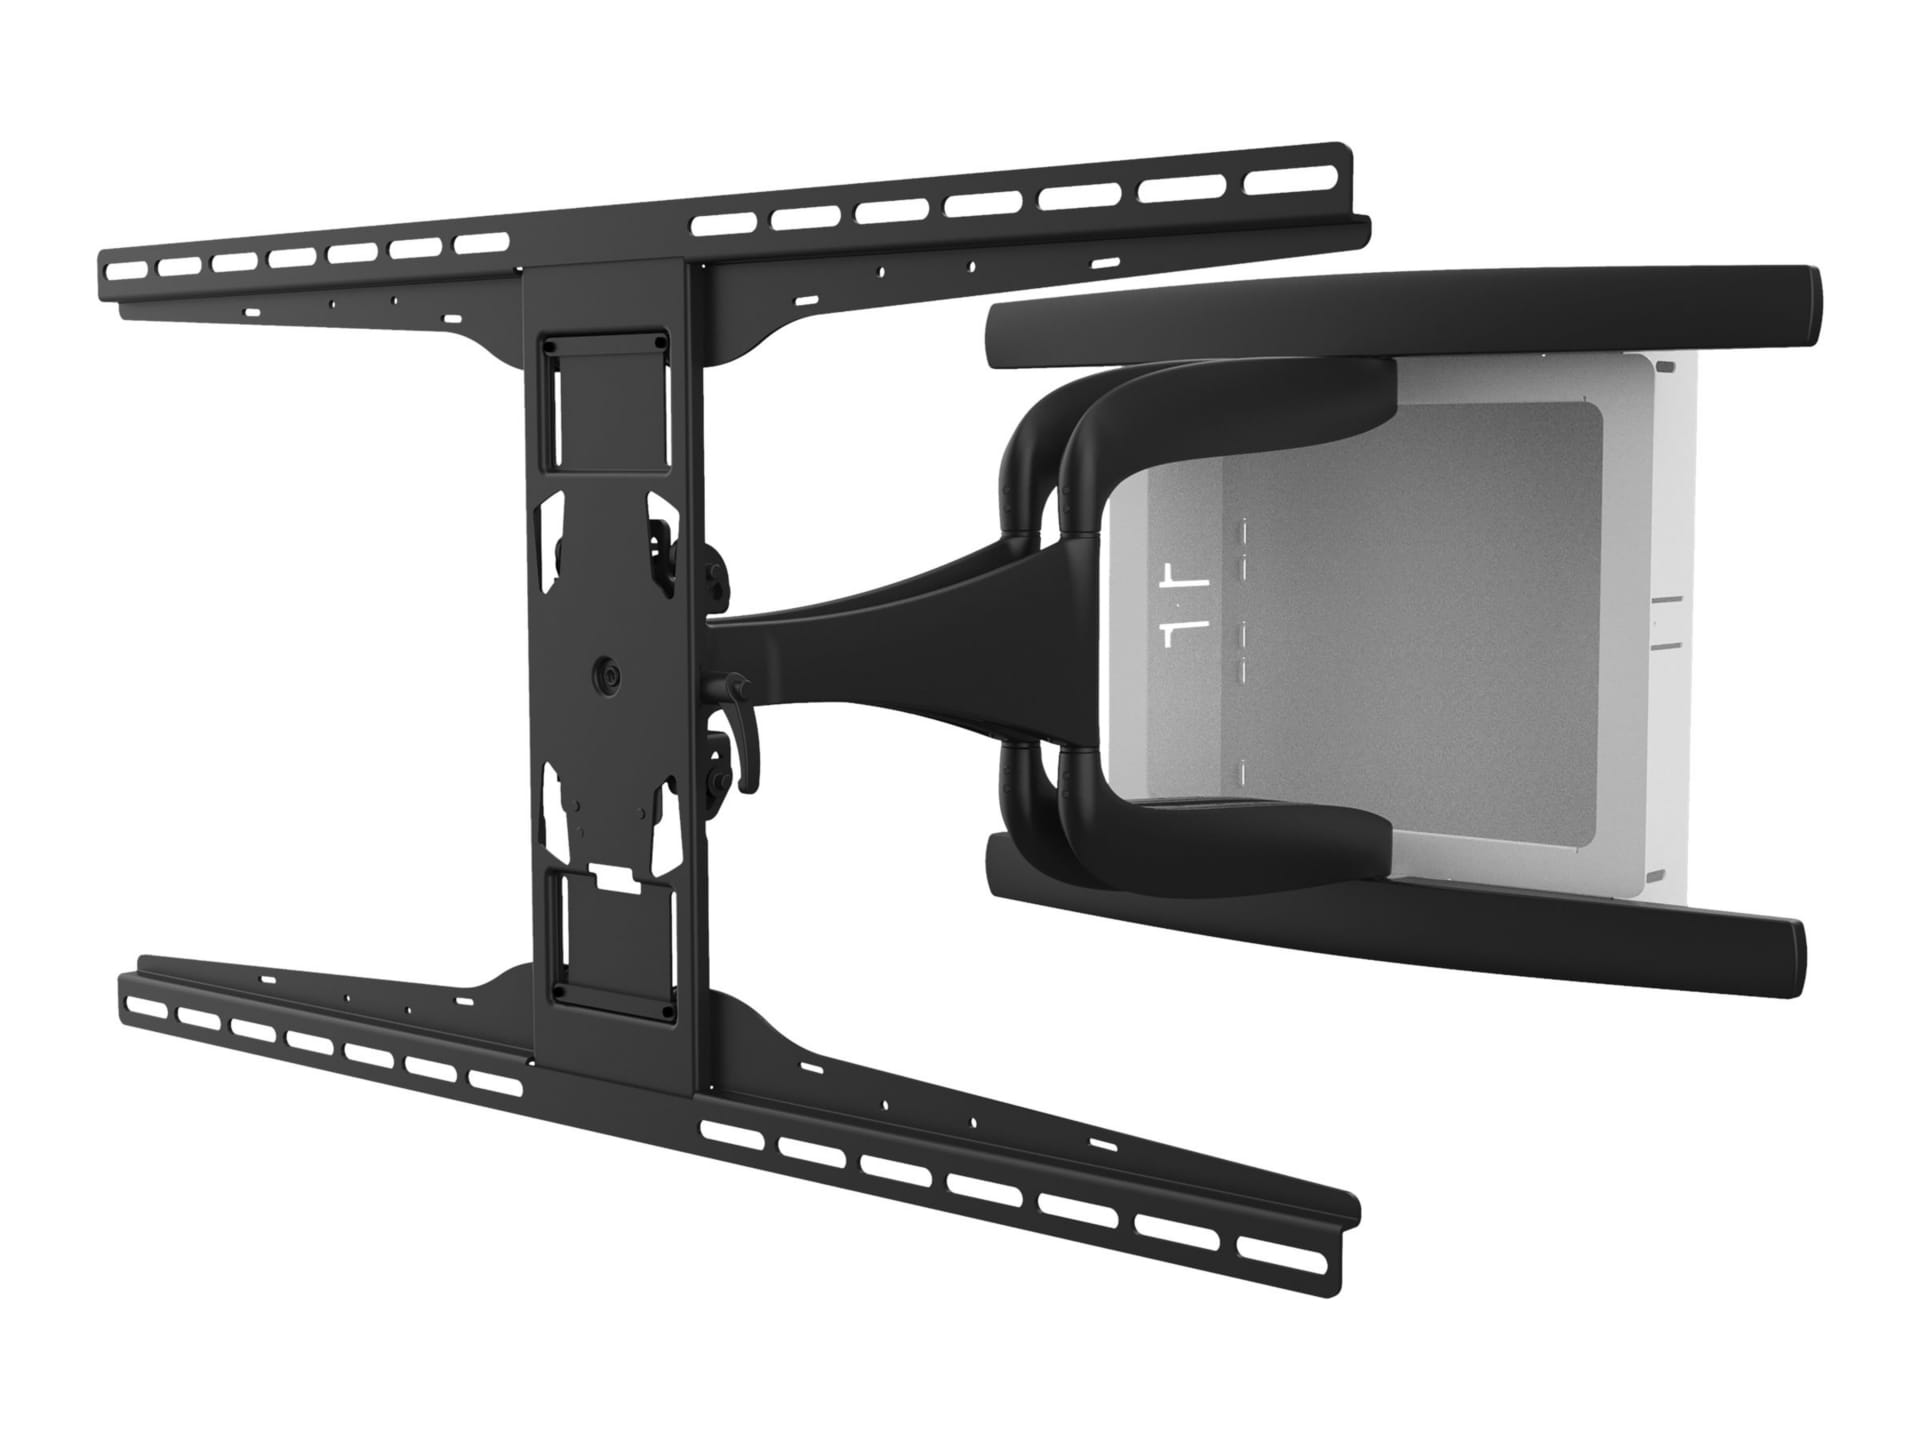 Peerless-AV Designer Series IM771PU - mounting kit - low profile - for flat panel / AV equipment - black, white trim